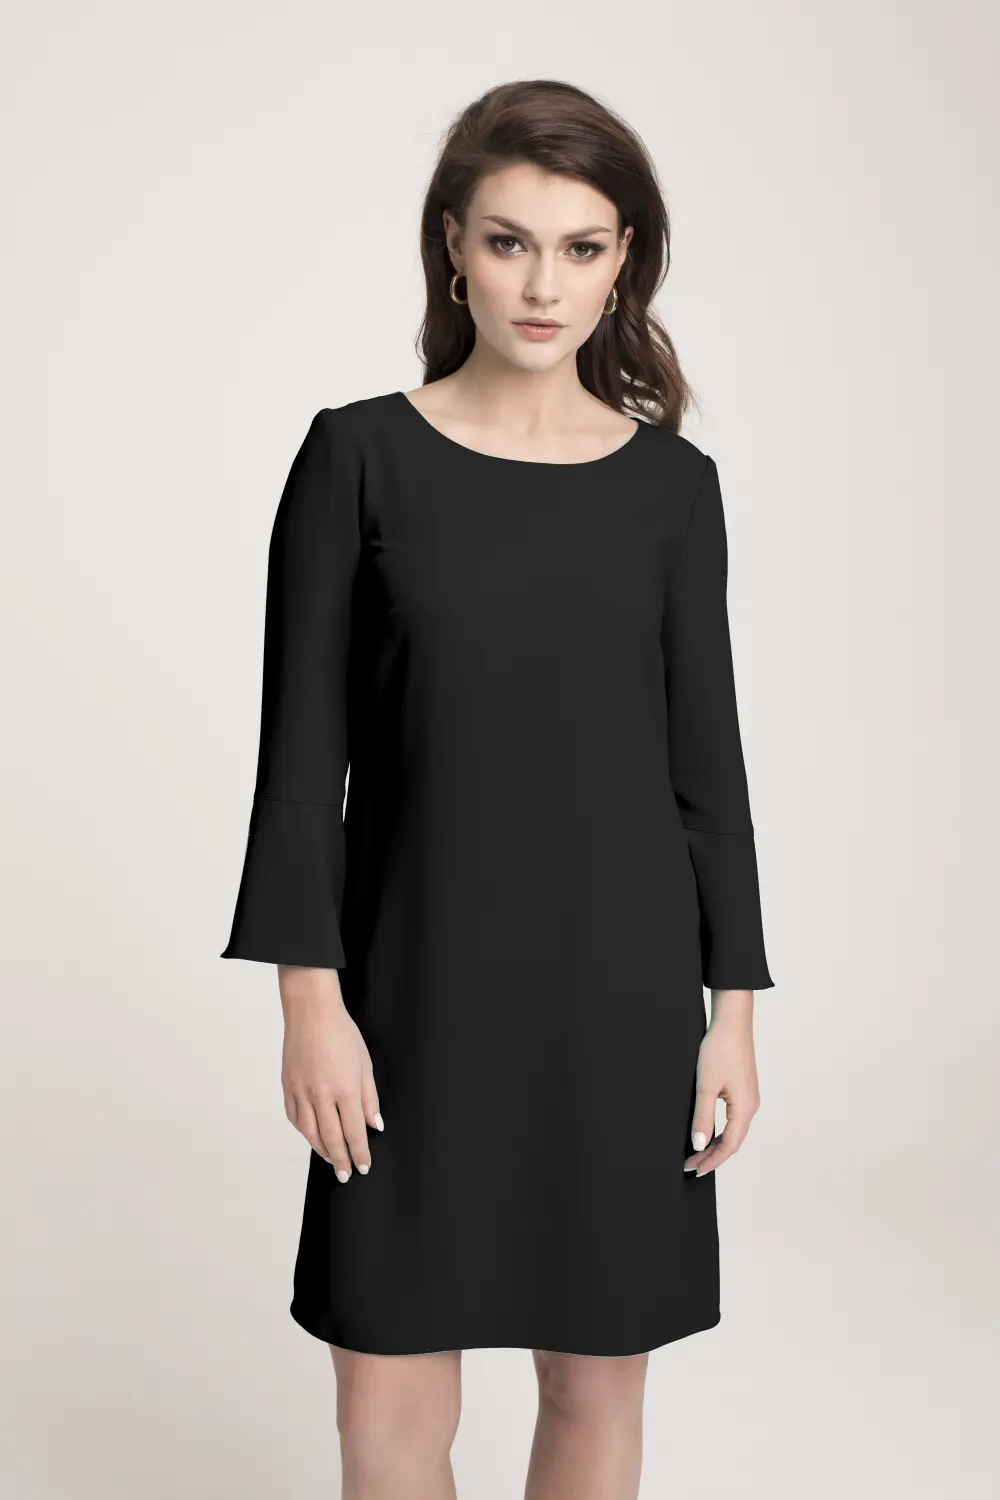 czarna sukienka wizytowa luźna rękaw dzwonek ozdobny polska marka Vito Vergelis